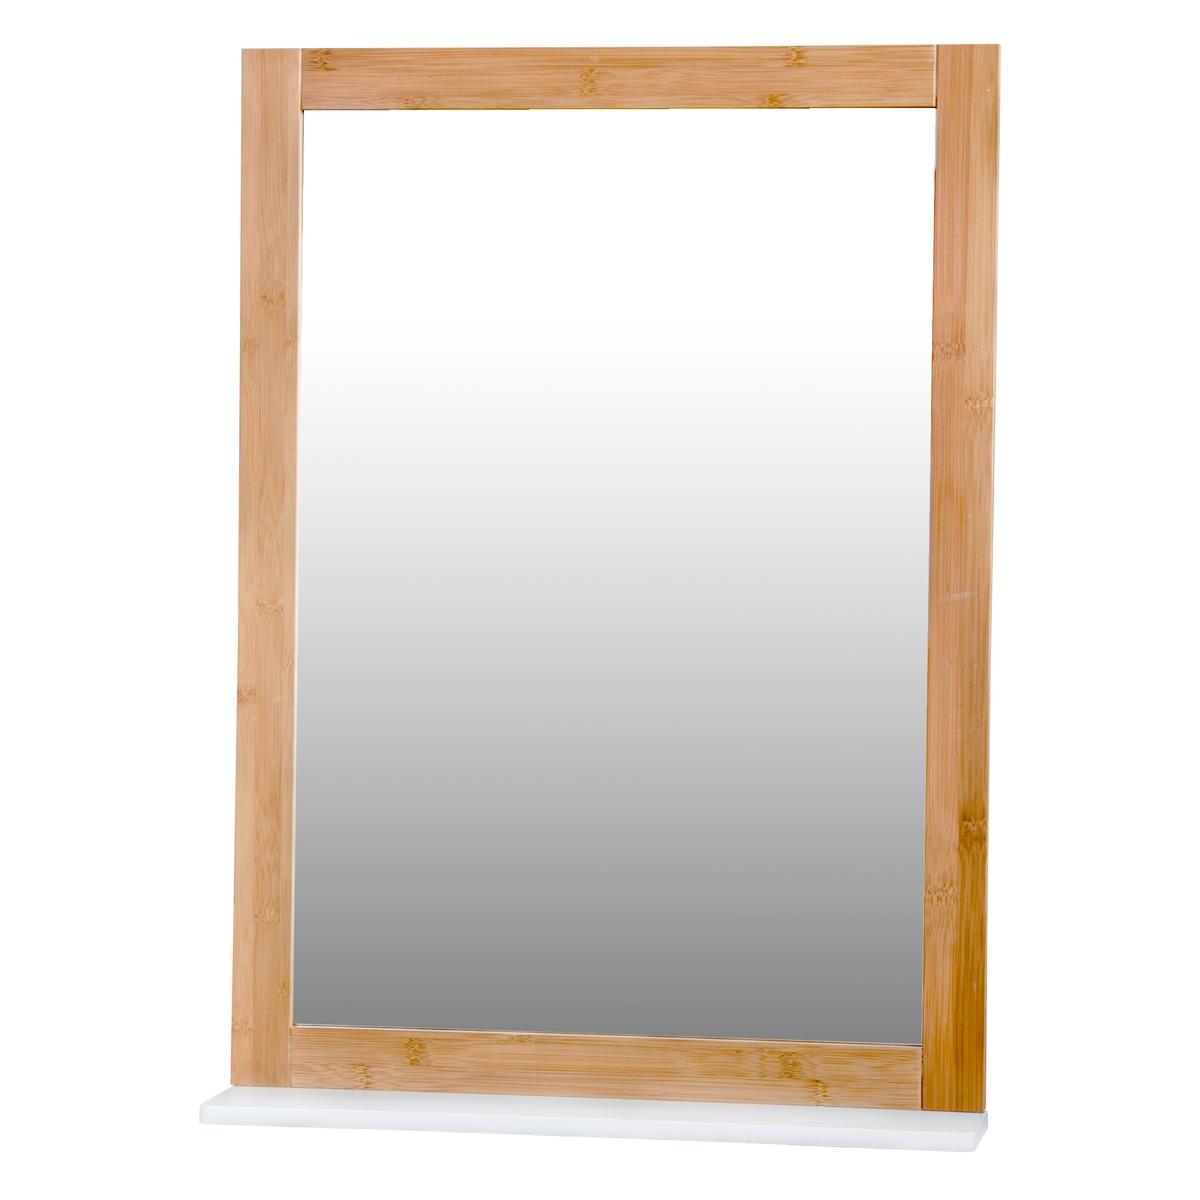 Miroir en bambou et bois - 50 x 10 x H 70 cm - Marron